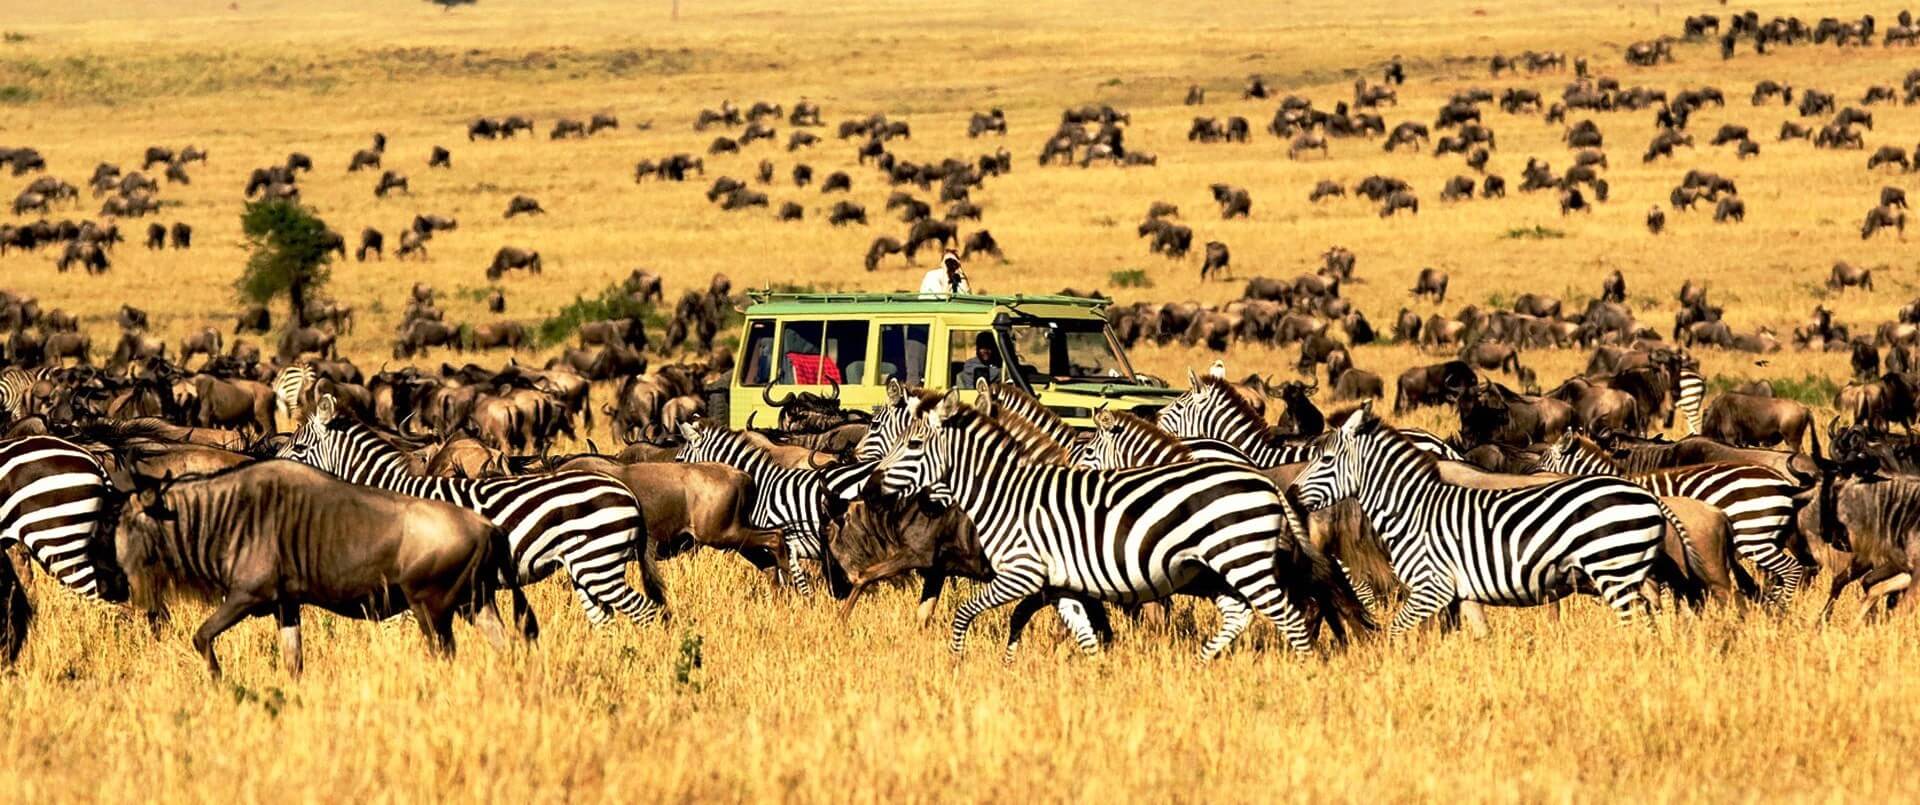 the safari in africa